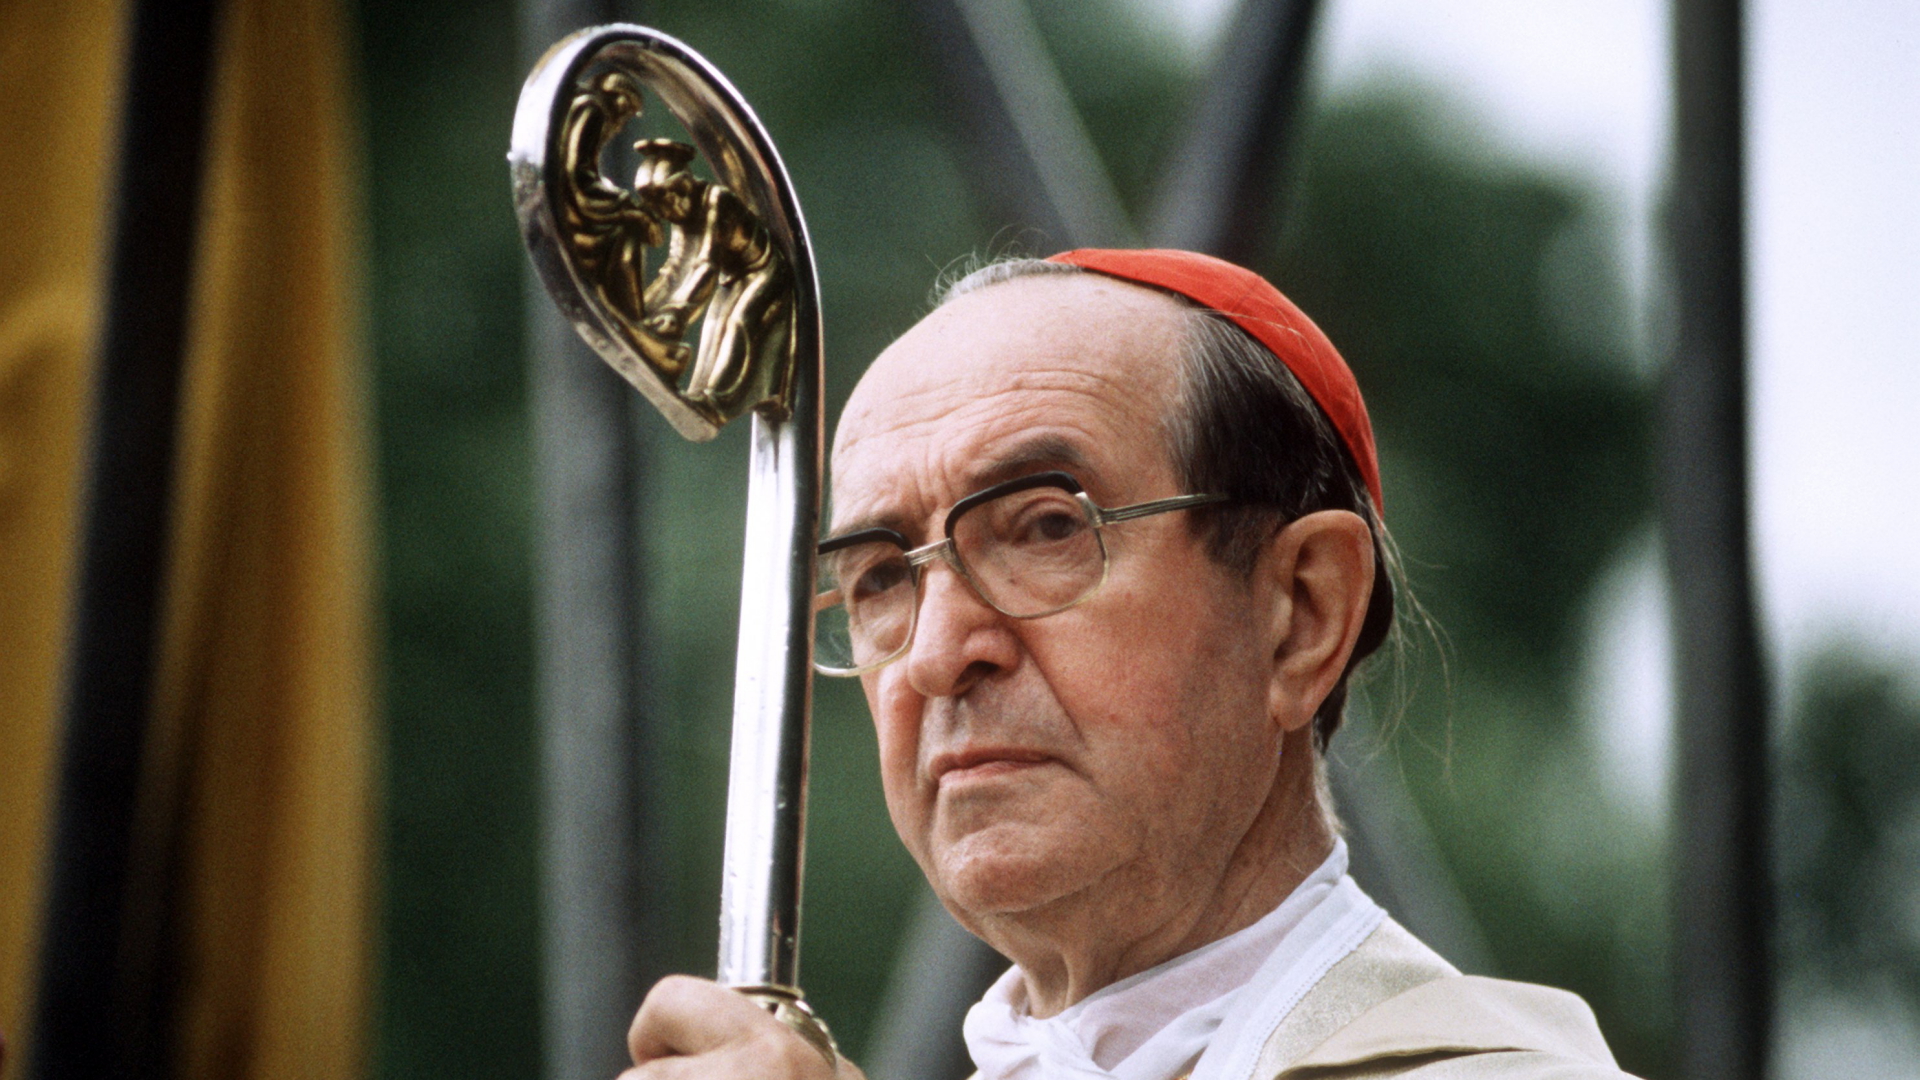 Der als "Ruhrbischo" bekannte Theologe Franz Hengsbach, 1988 vom Papst zum Kardinal ernannt. 